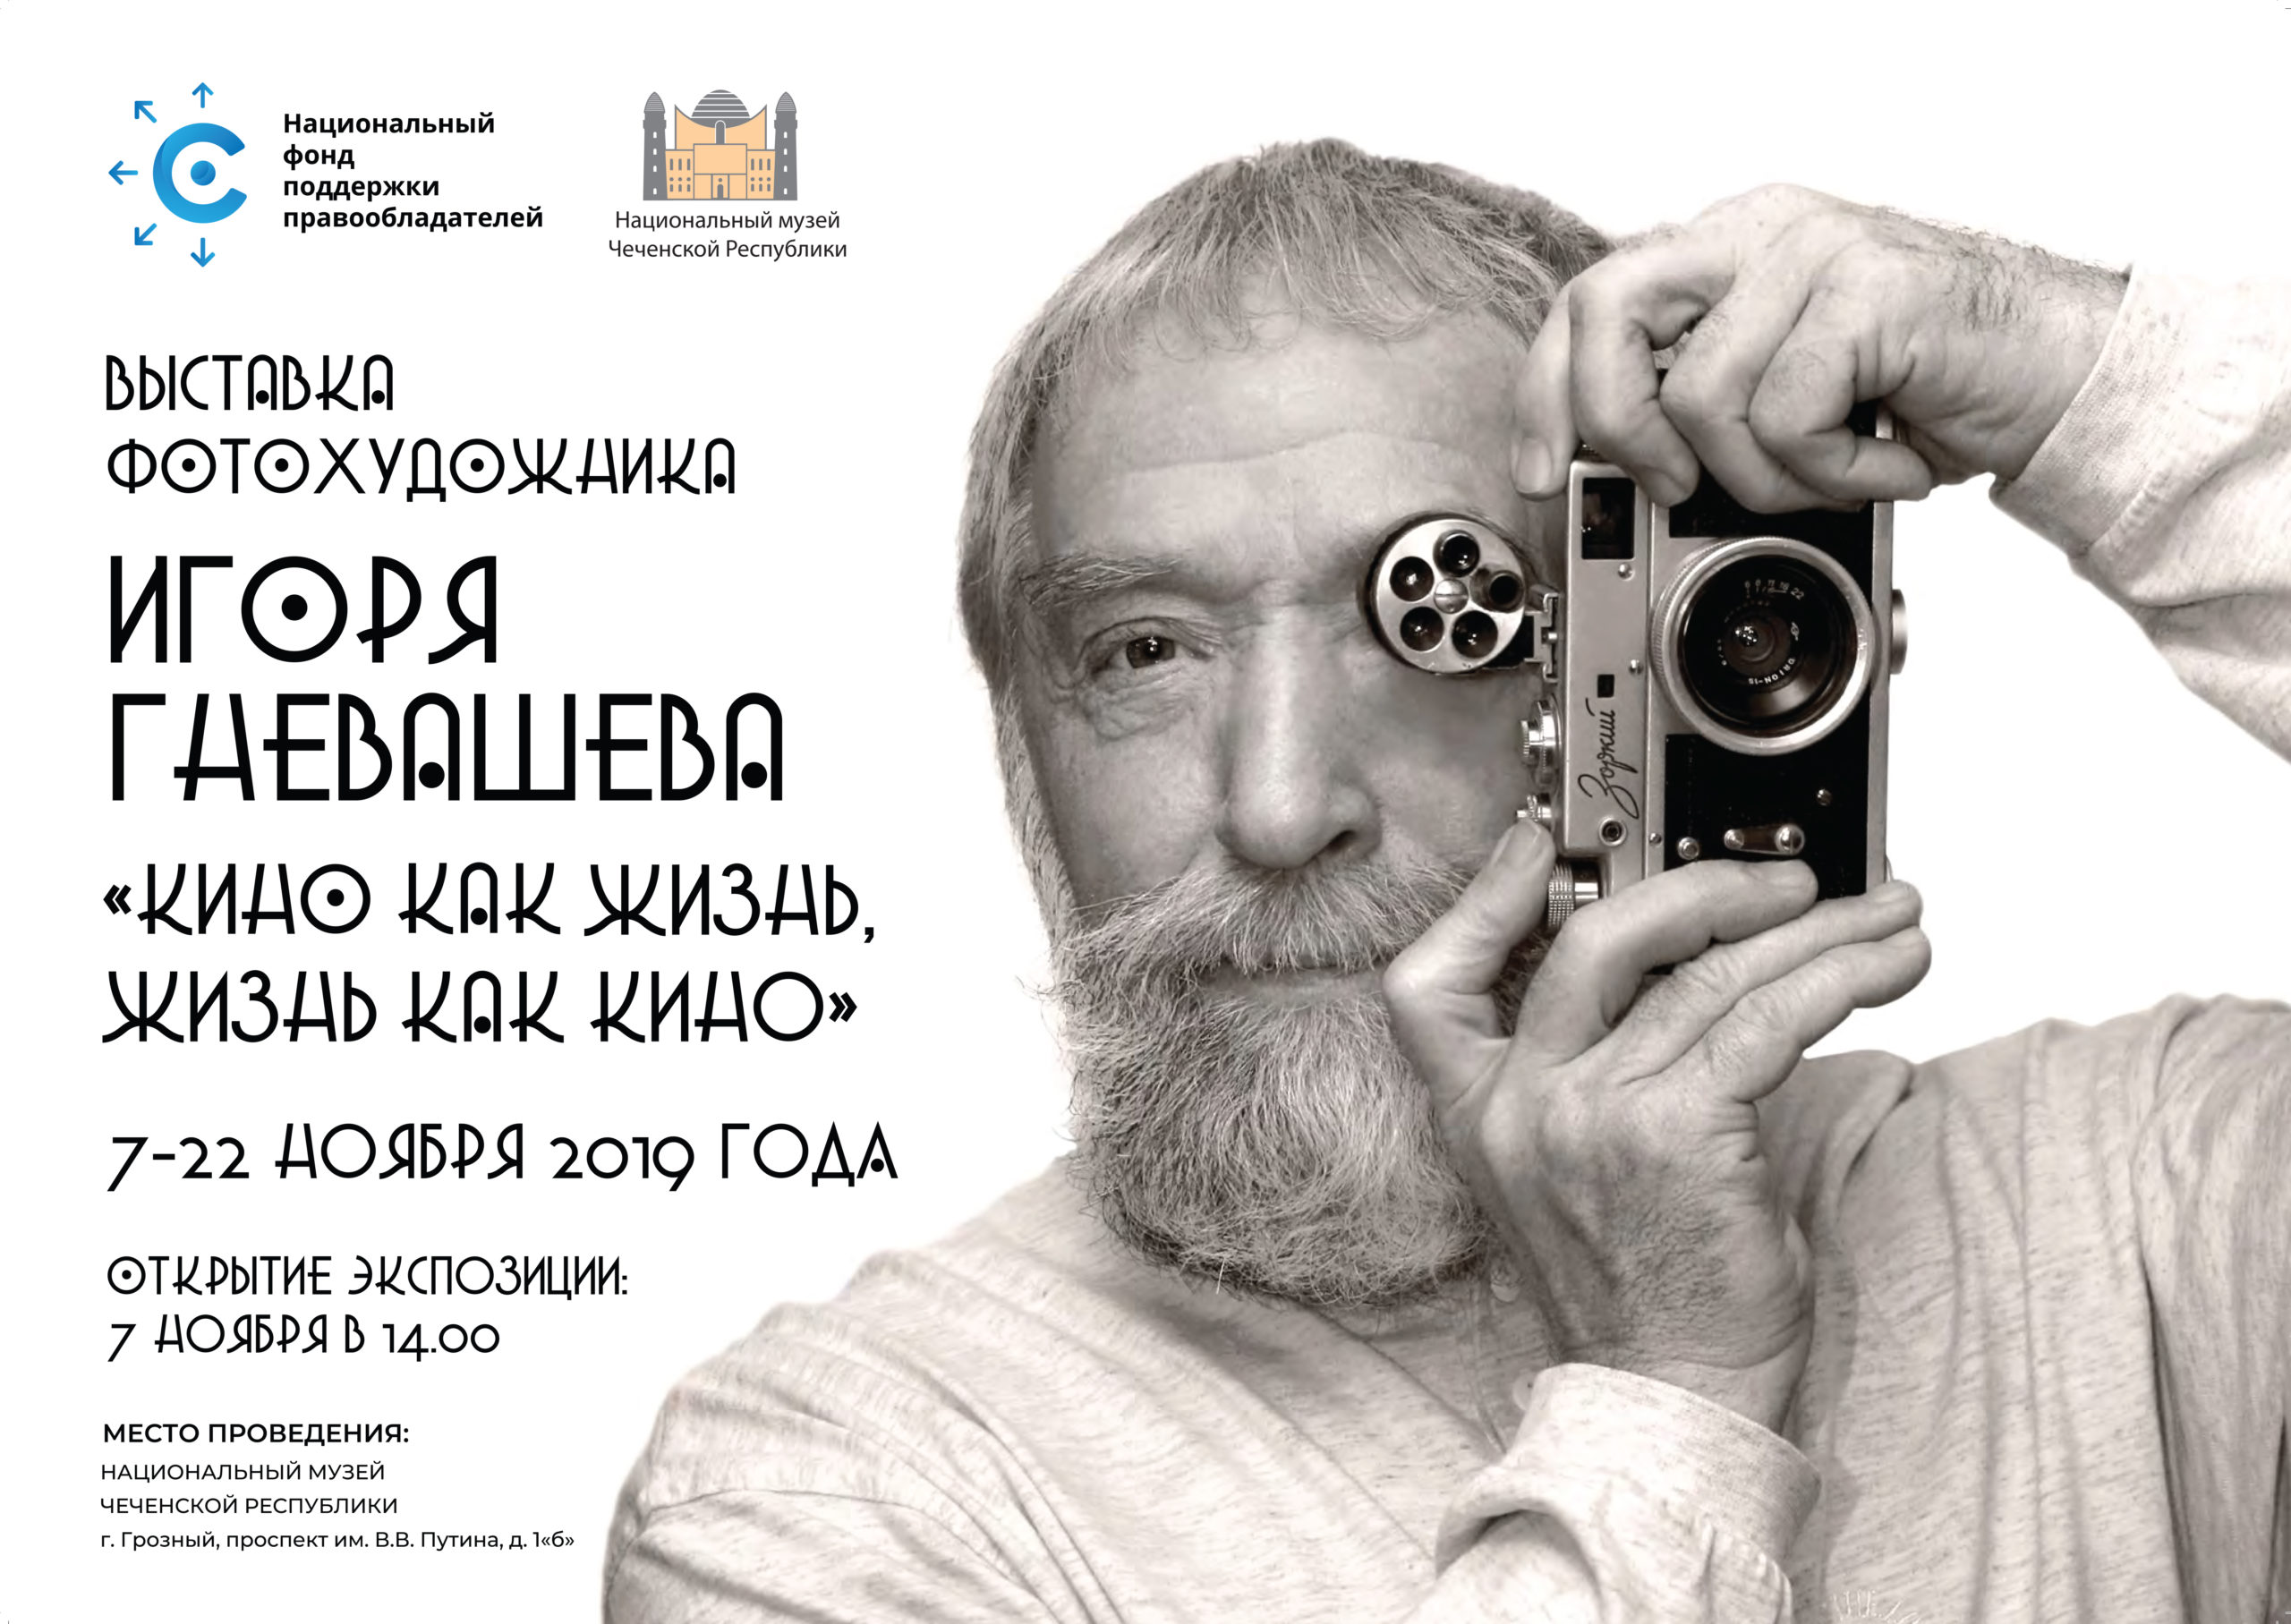 НФПП покажет фотовыставку Игоря Гневашева в рамках празднования 95-летия Национального музея ЧР